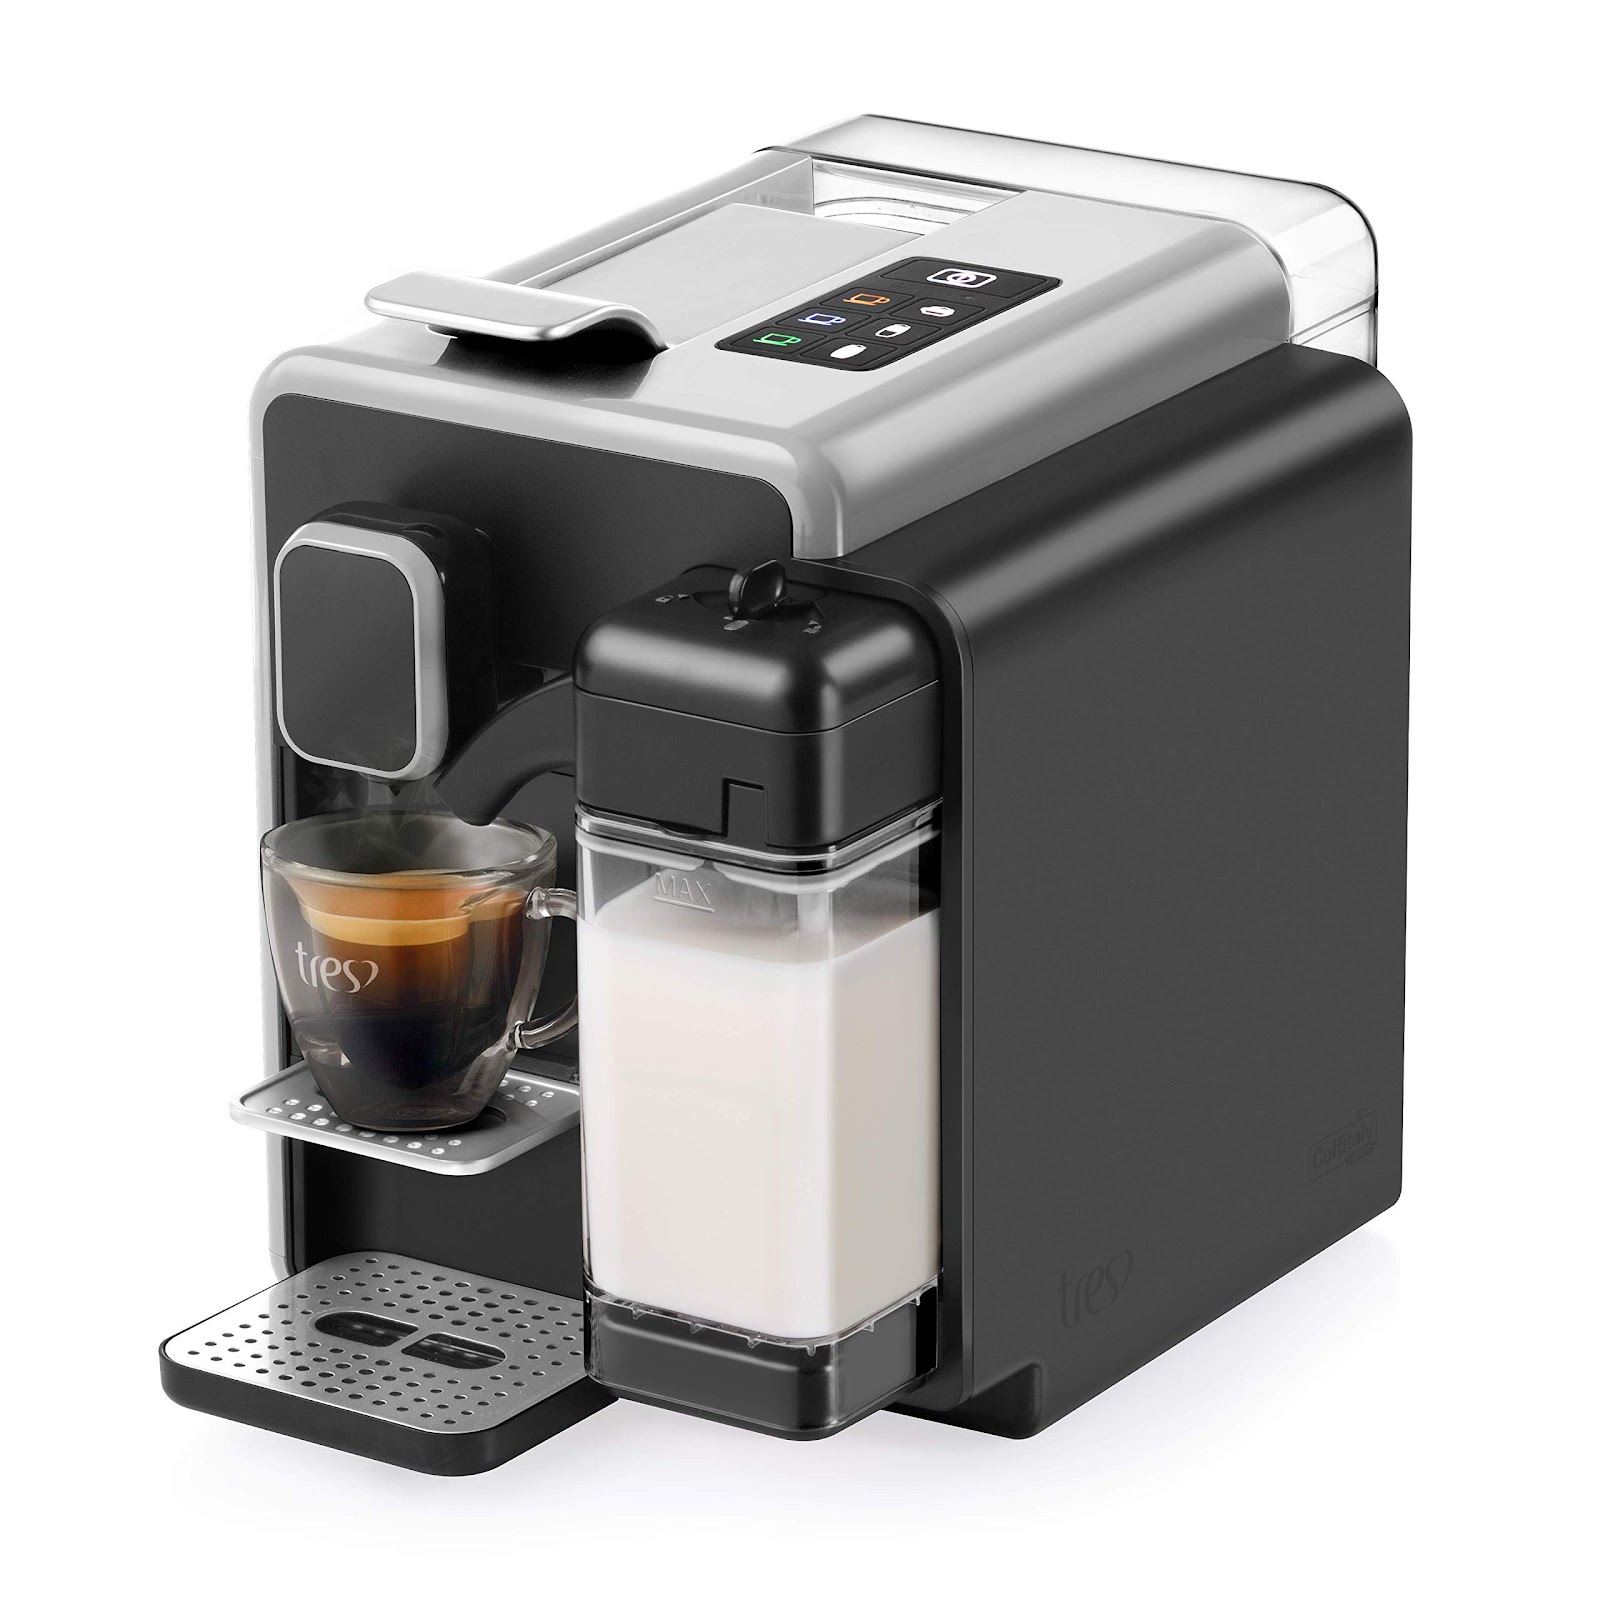 Máquina de Café Expresso e Bebidas Quentes com Leite 110V, Três BARISTA S22, Prata 110 Volts Prata